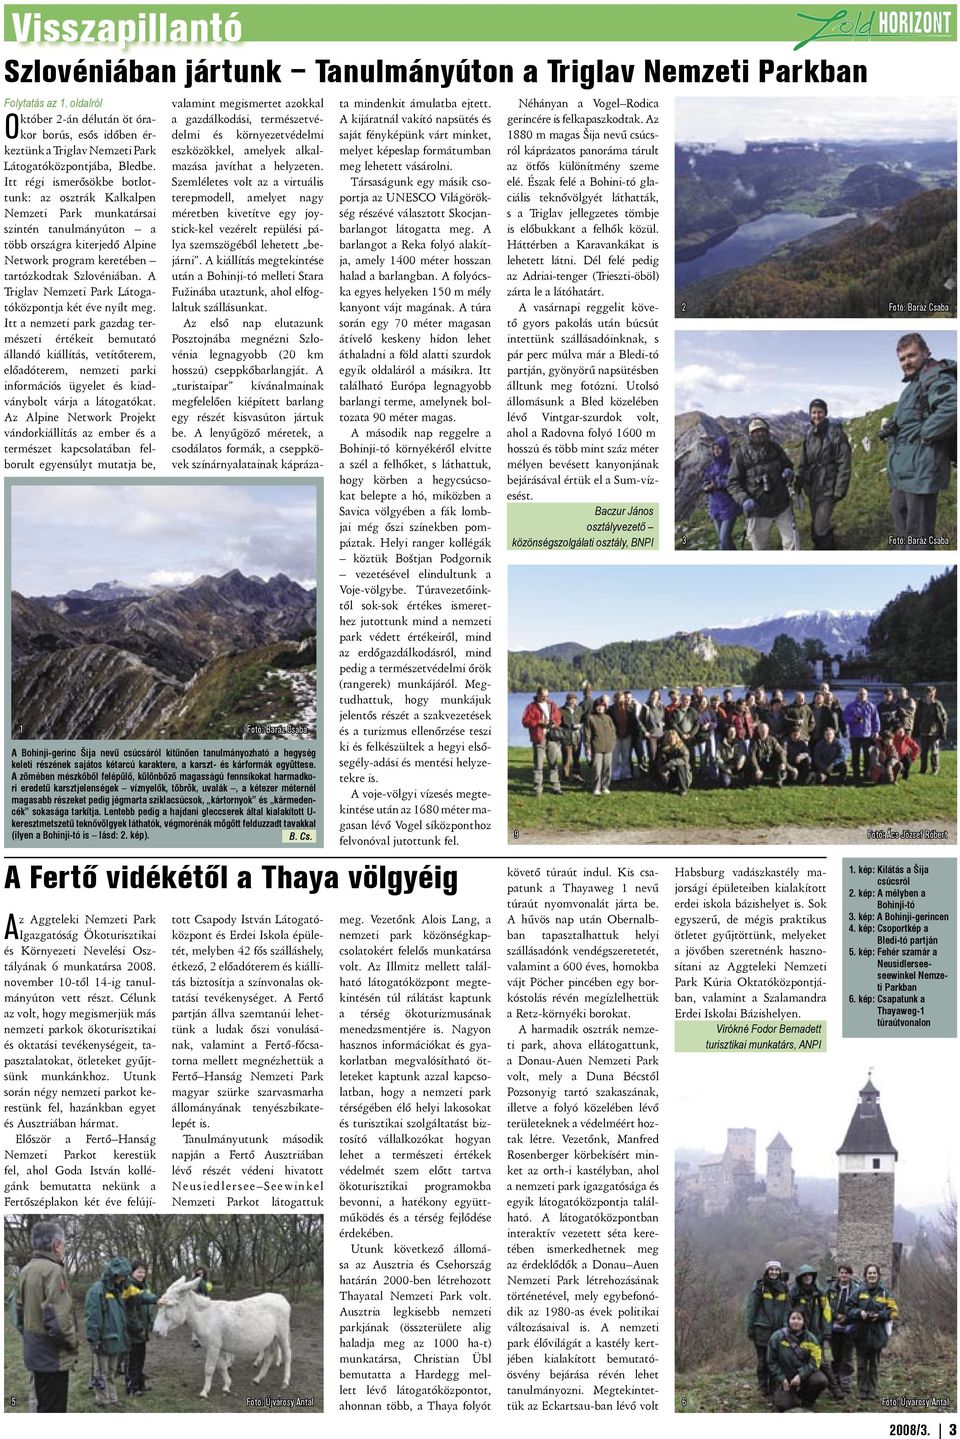 Itt régi ismerősökbe botlottunk: az osztrák Kalkalpen Nemzeti Park munkatársai szintén tanulmányúton a több országra kiterjedő Alpine Network program keretében tartózkodtak Szlovéniában.